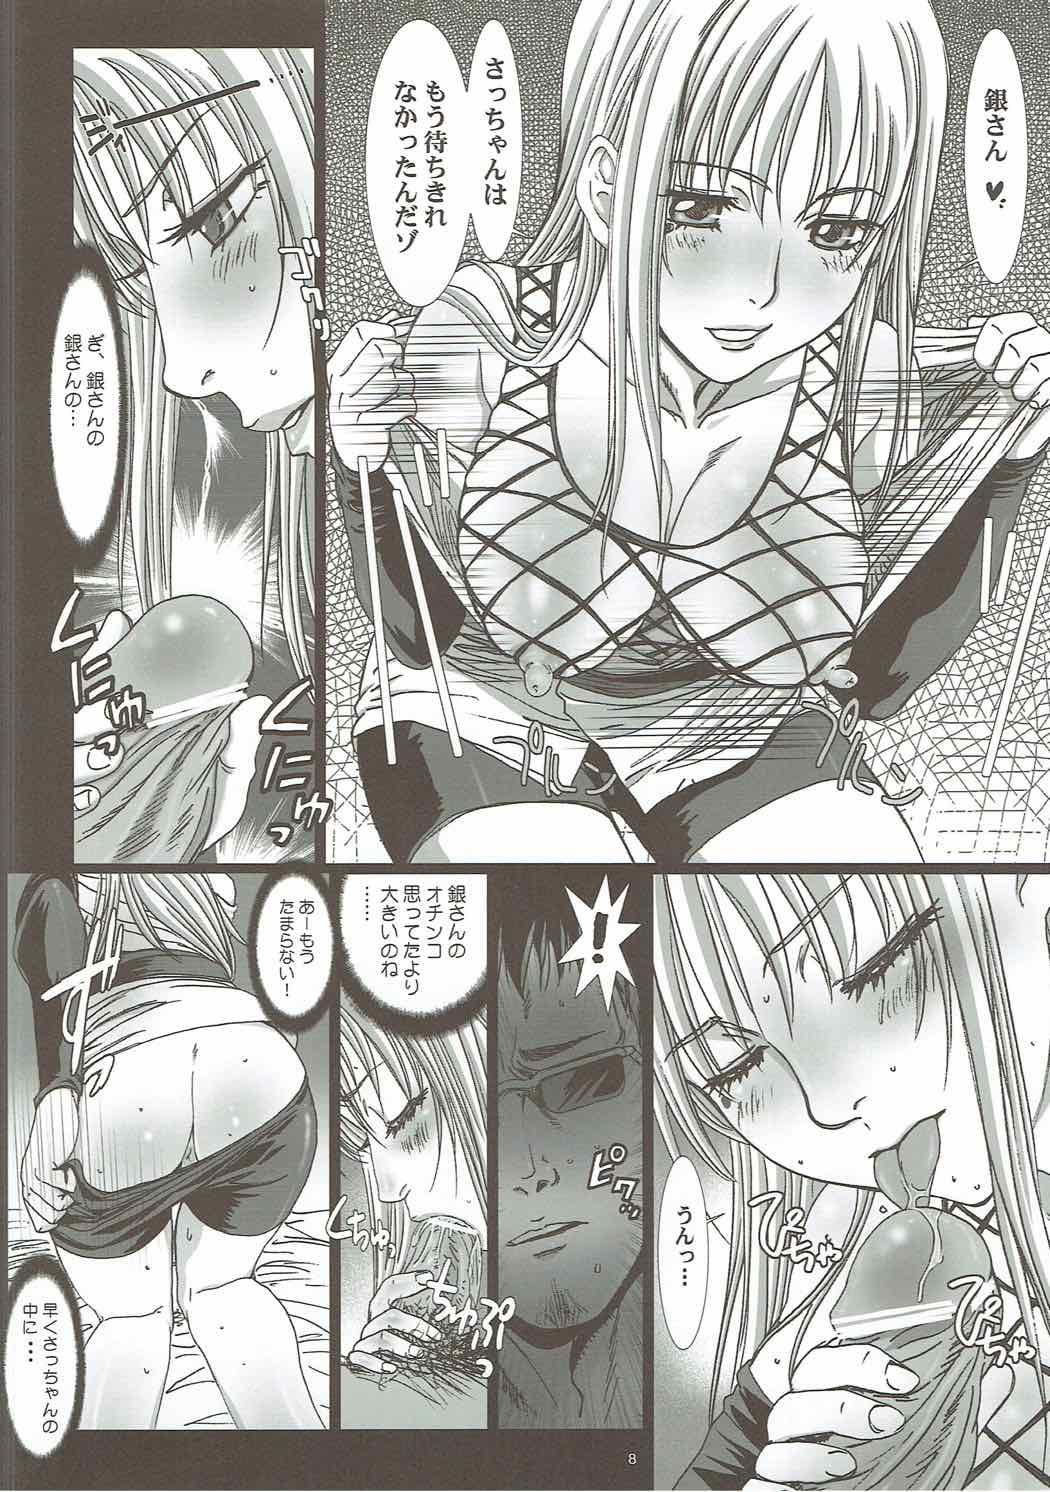 Blow Sacchan wa Kunoichi dazo? - Gintama Nice Ass - Page 5